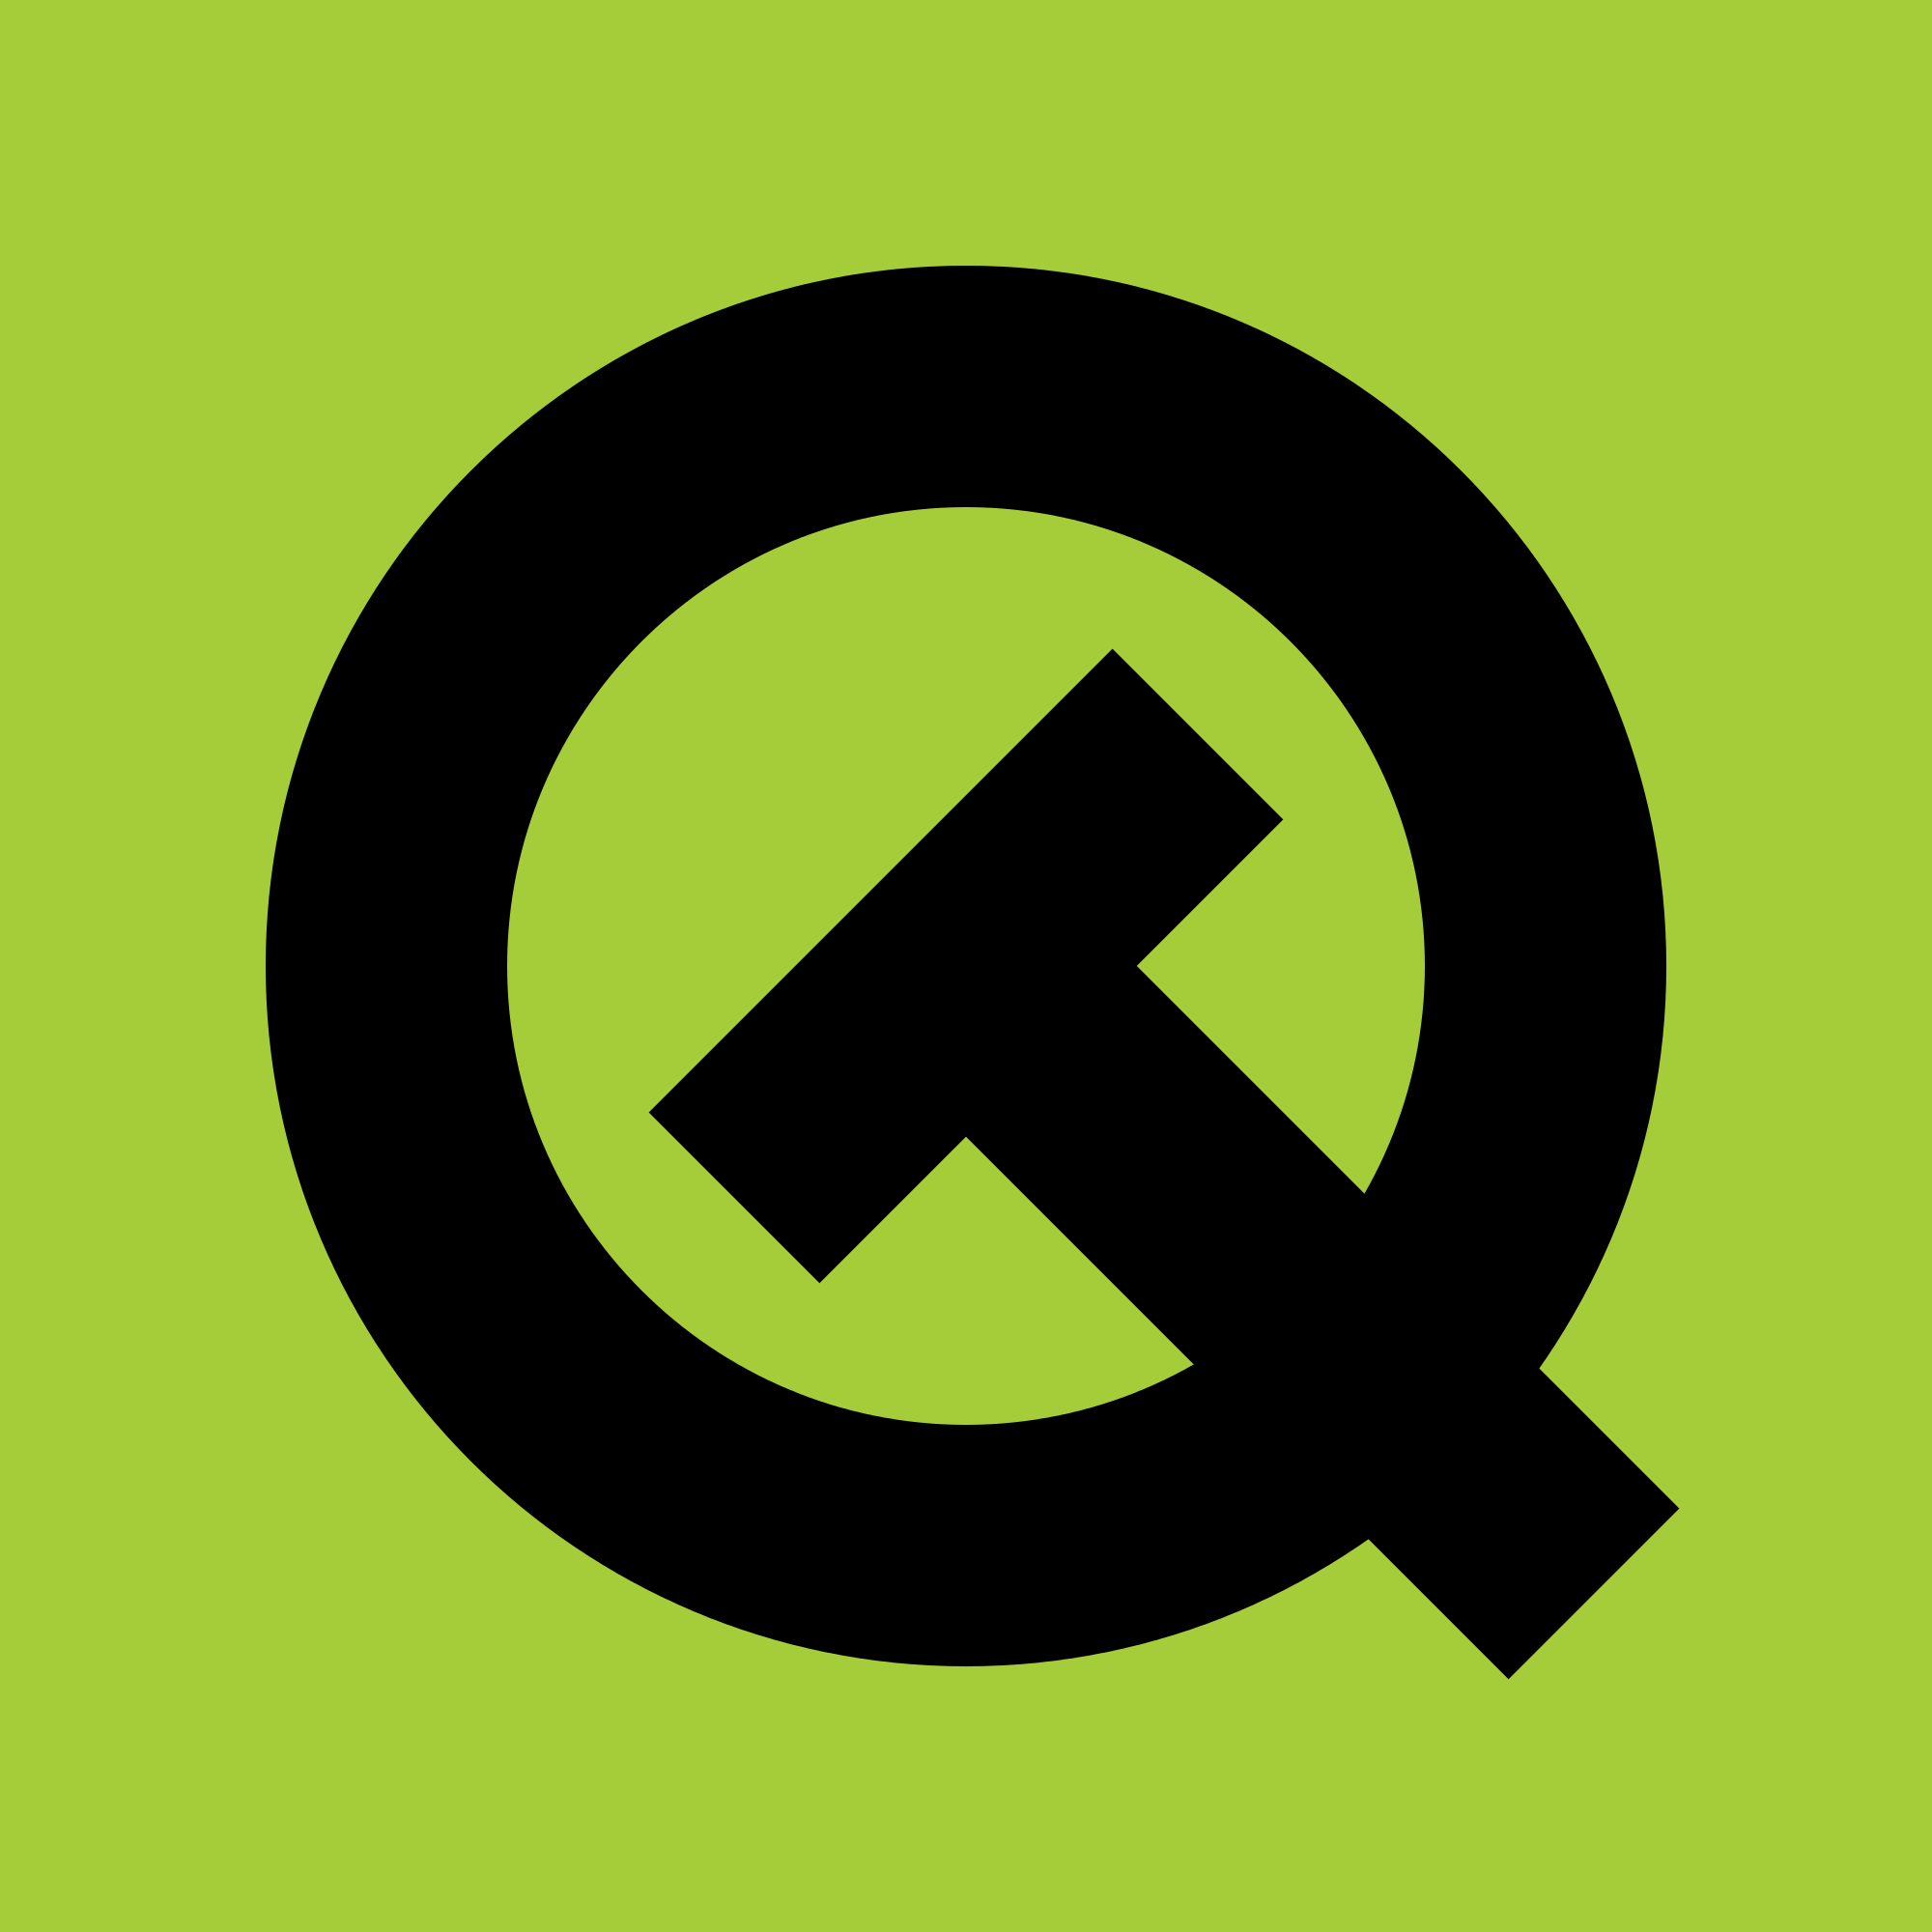 Qt Logo - File:Qt logo old.svg - Wikimedia Commons